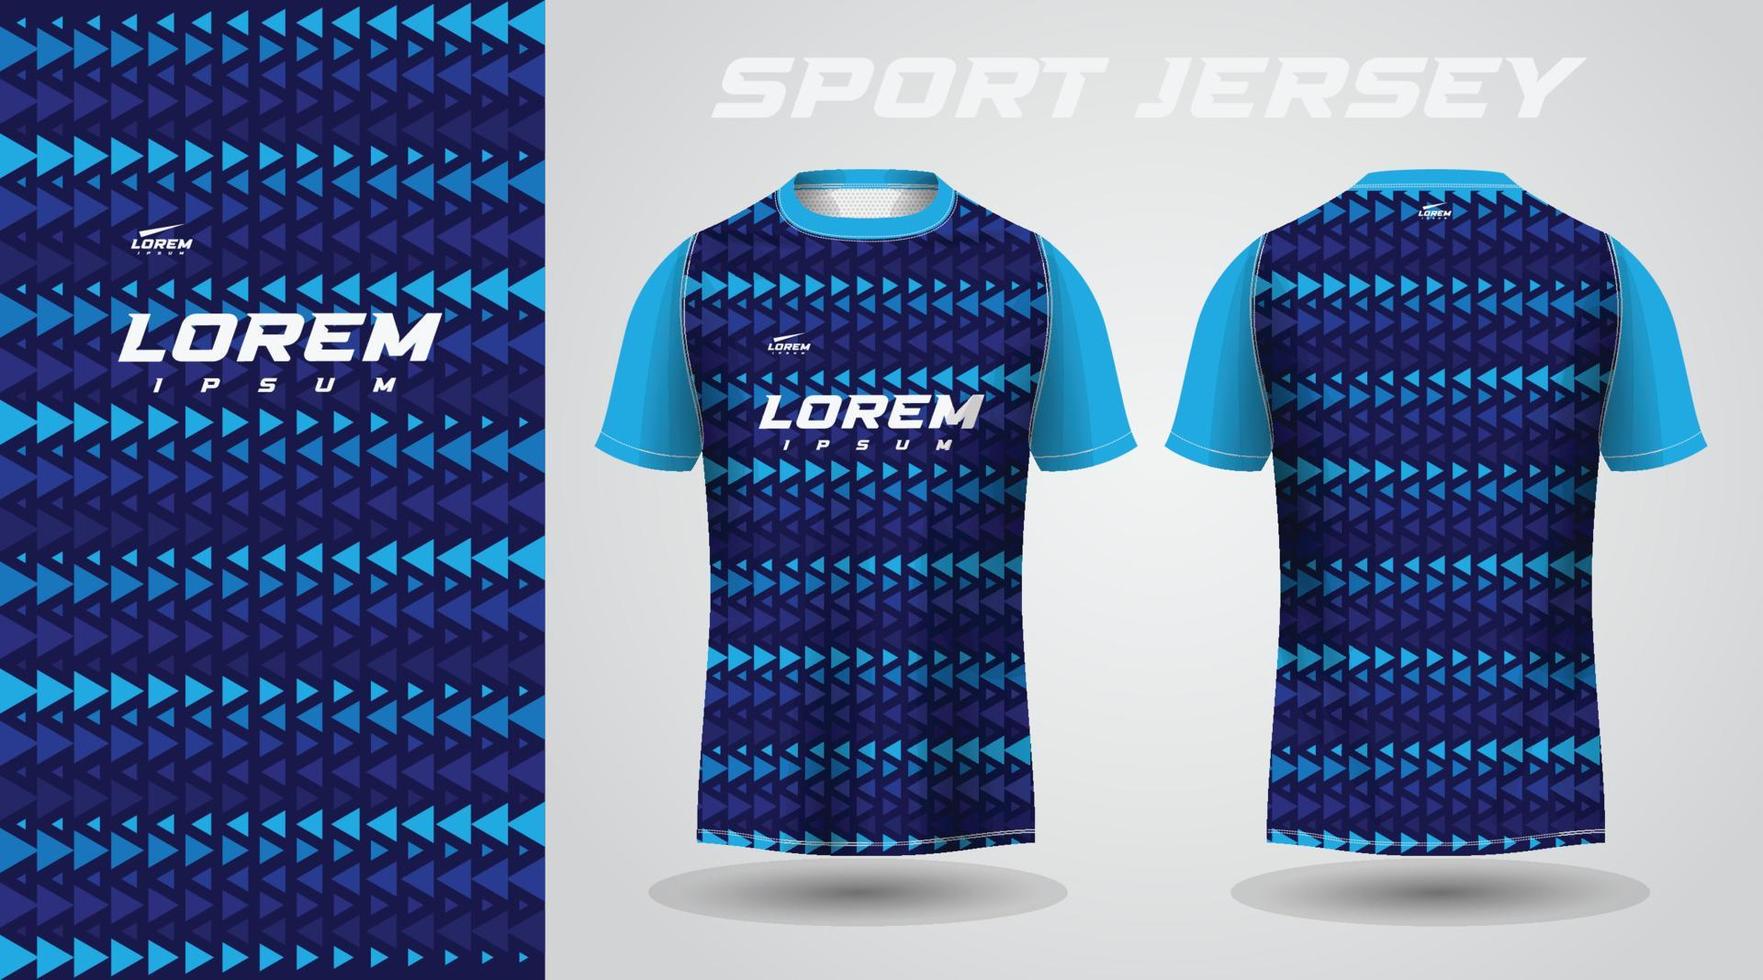 blue t-shirt sport jersey design vector